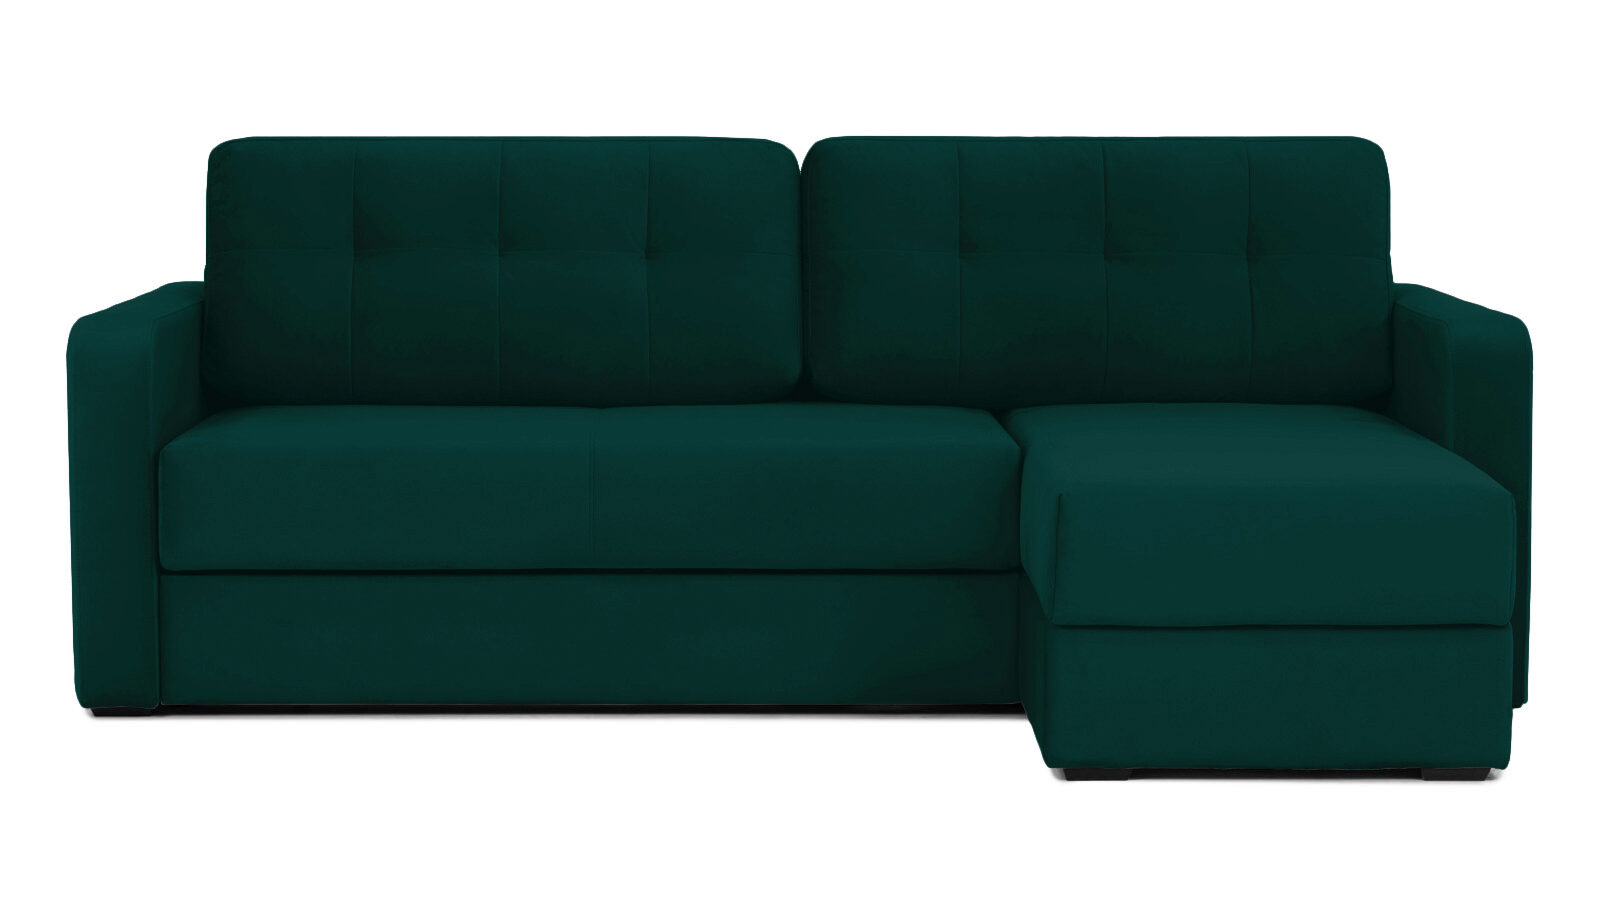 Угловой диван Loko Pro с широкими подлокотниками, с матрасом комбинированной жесткости Askona - фото 1